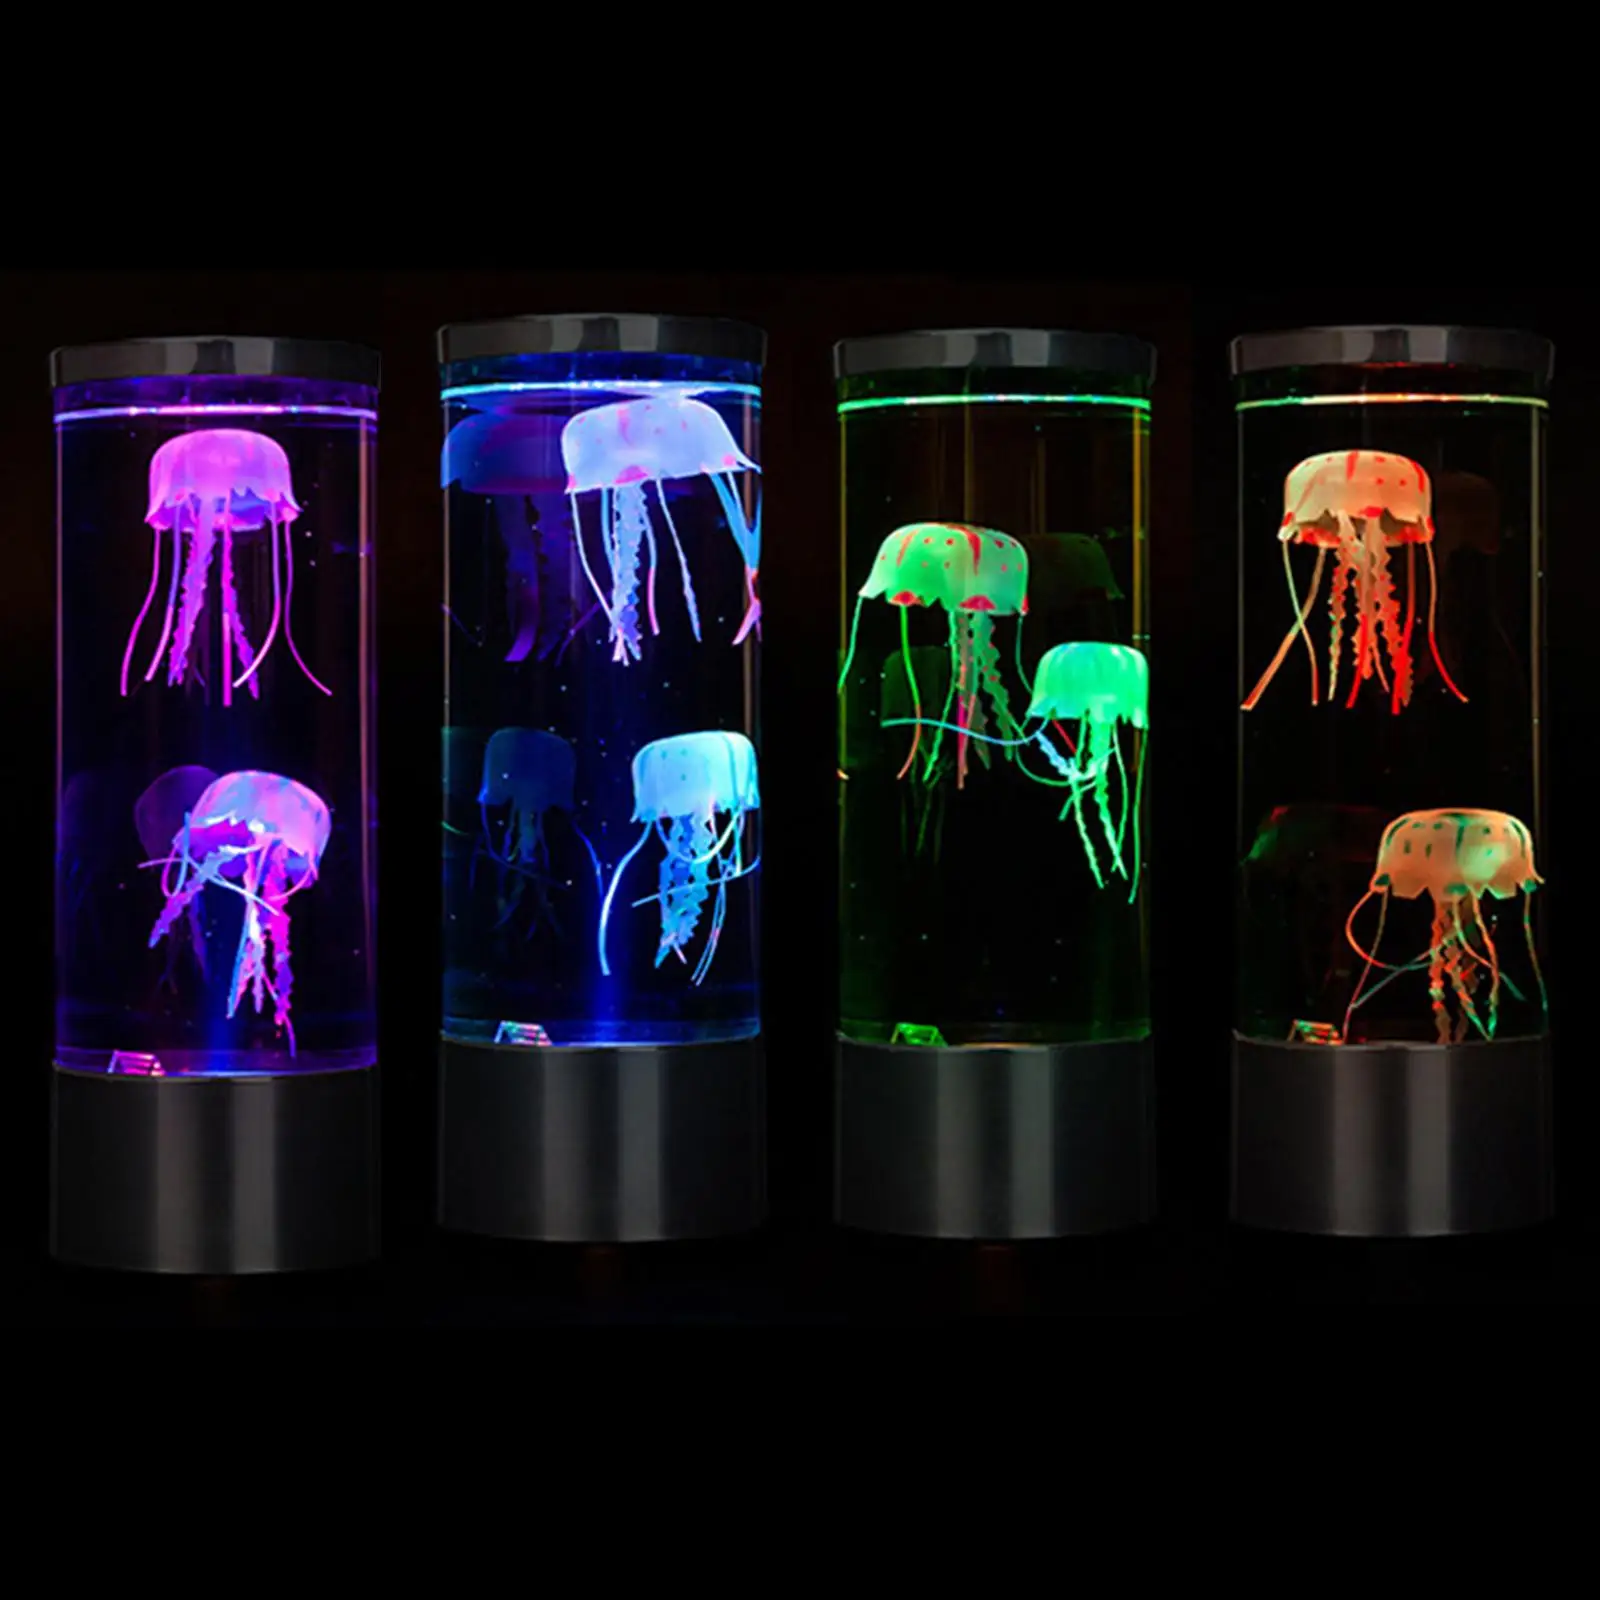 Мини настольная лампа с медузами Настольная декоративная лампа Сенсорная Синтетическая лампа для настроения в аквариуме с медузами